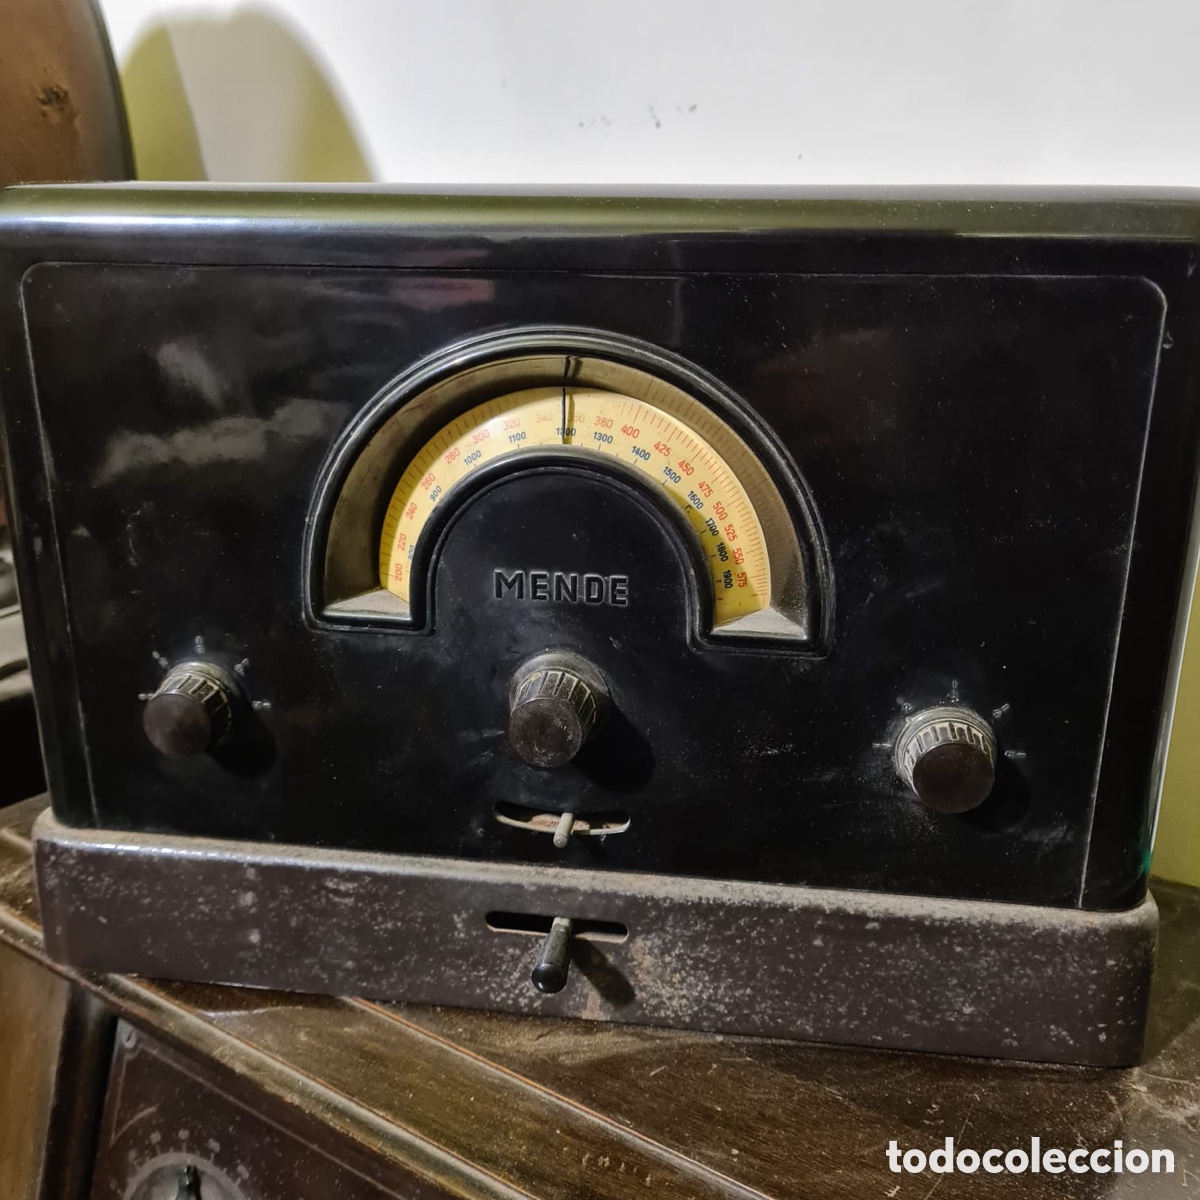 radio mende bakelita alemana 1930 - Buy Valve radios on todocoleccion